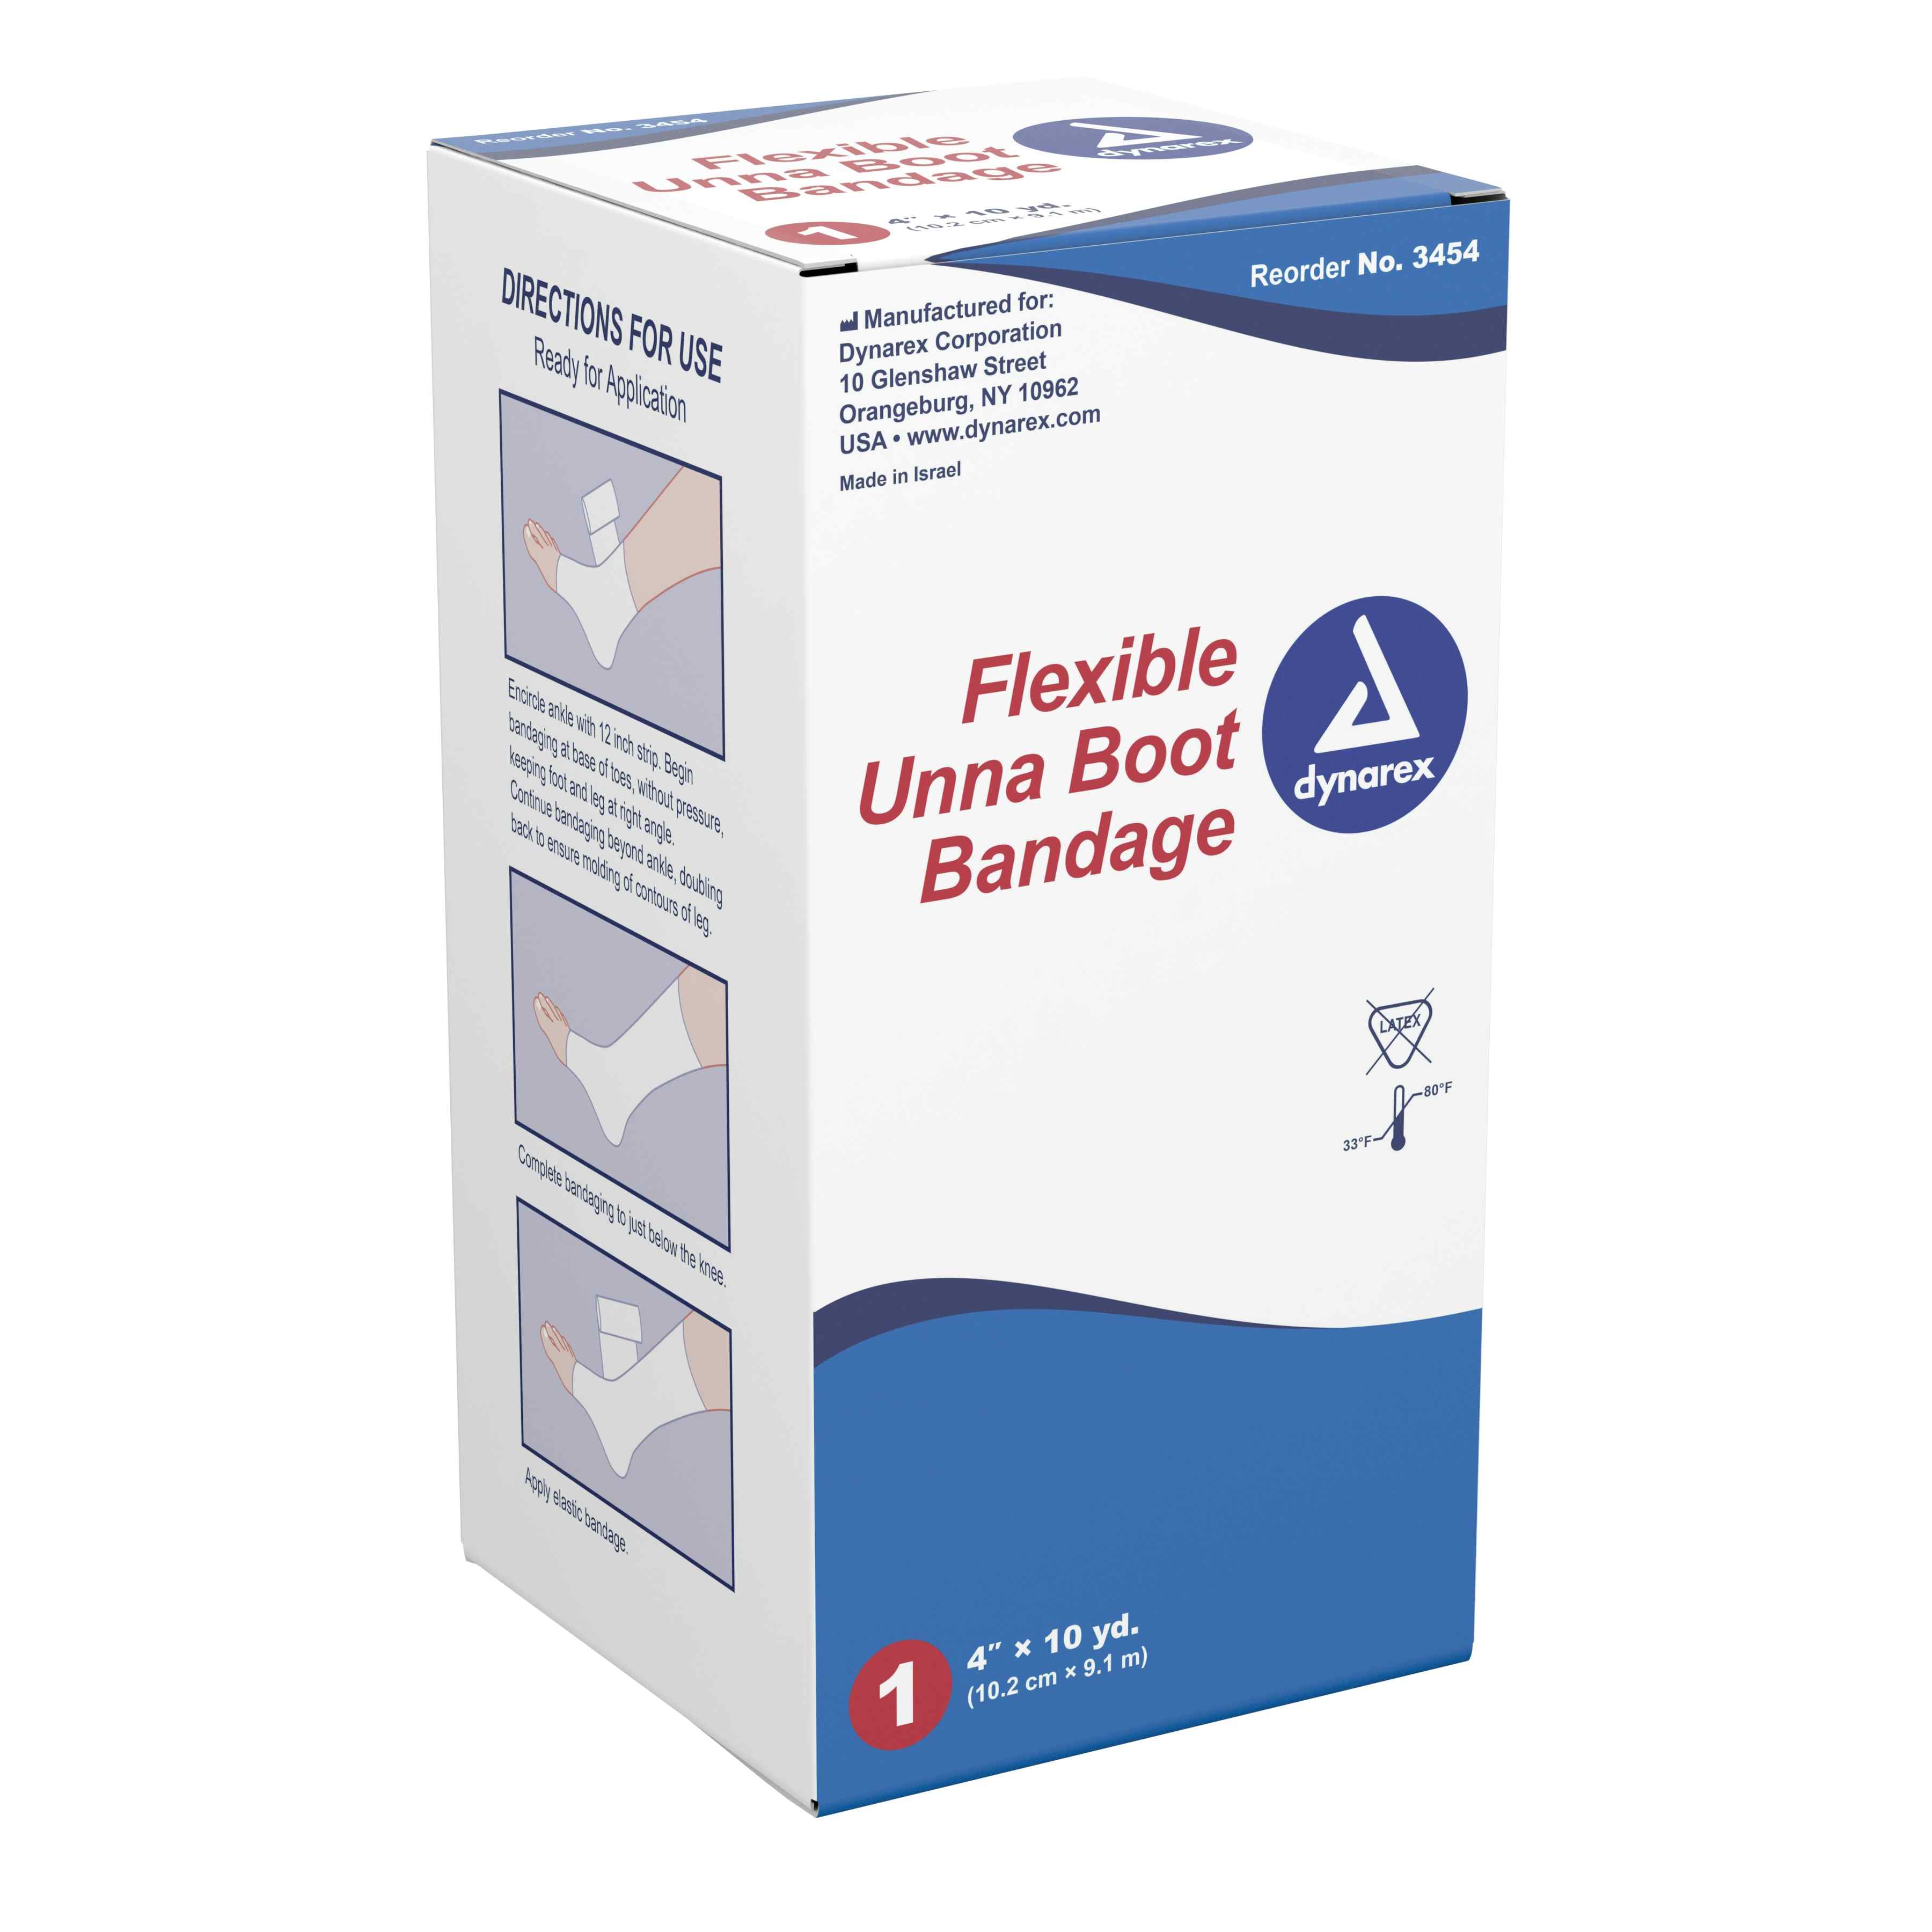 Dynarex Flexible Unna Boot Bandage, 4" X 10 yd, 3454, 1 Each